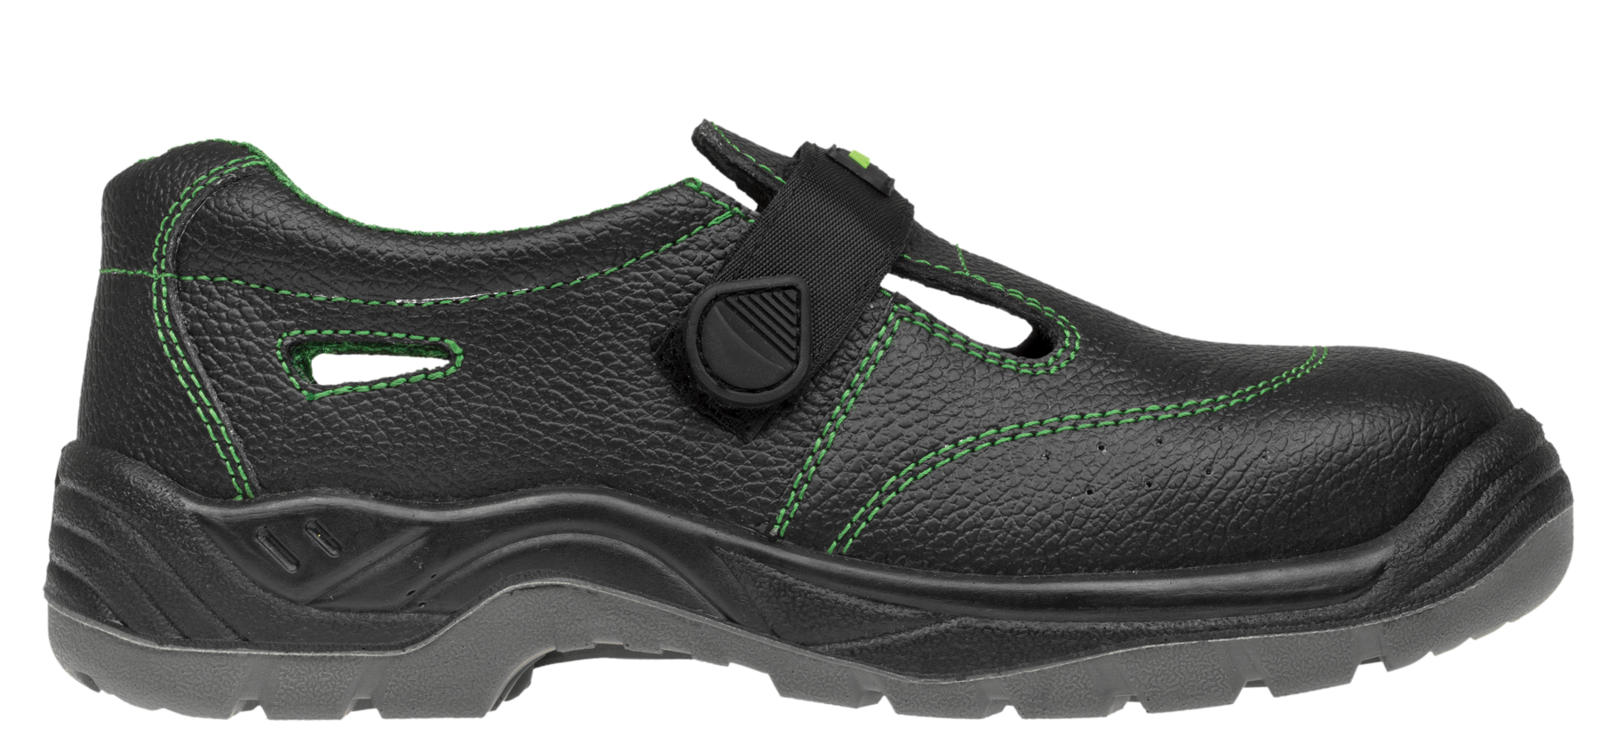 Bezpečnostné sandále Adamant Classic S1 - veľkosť: 47, farba: čierna